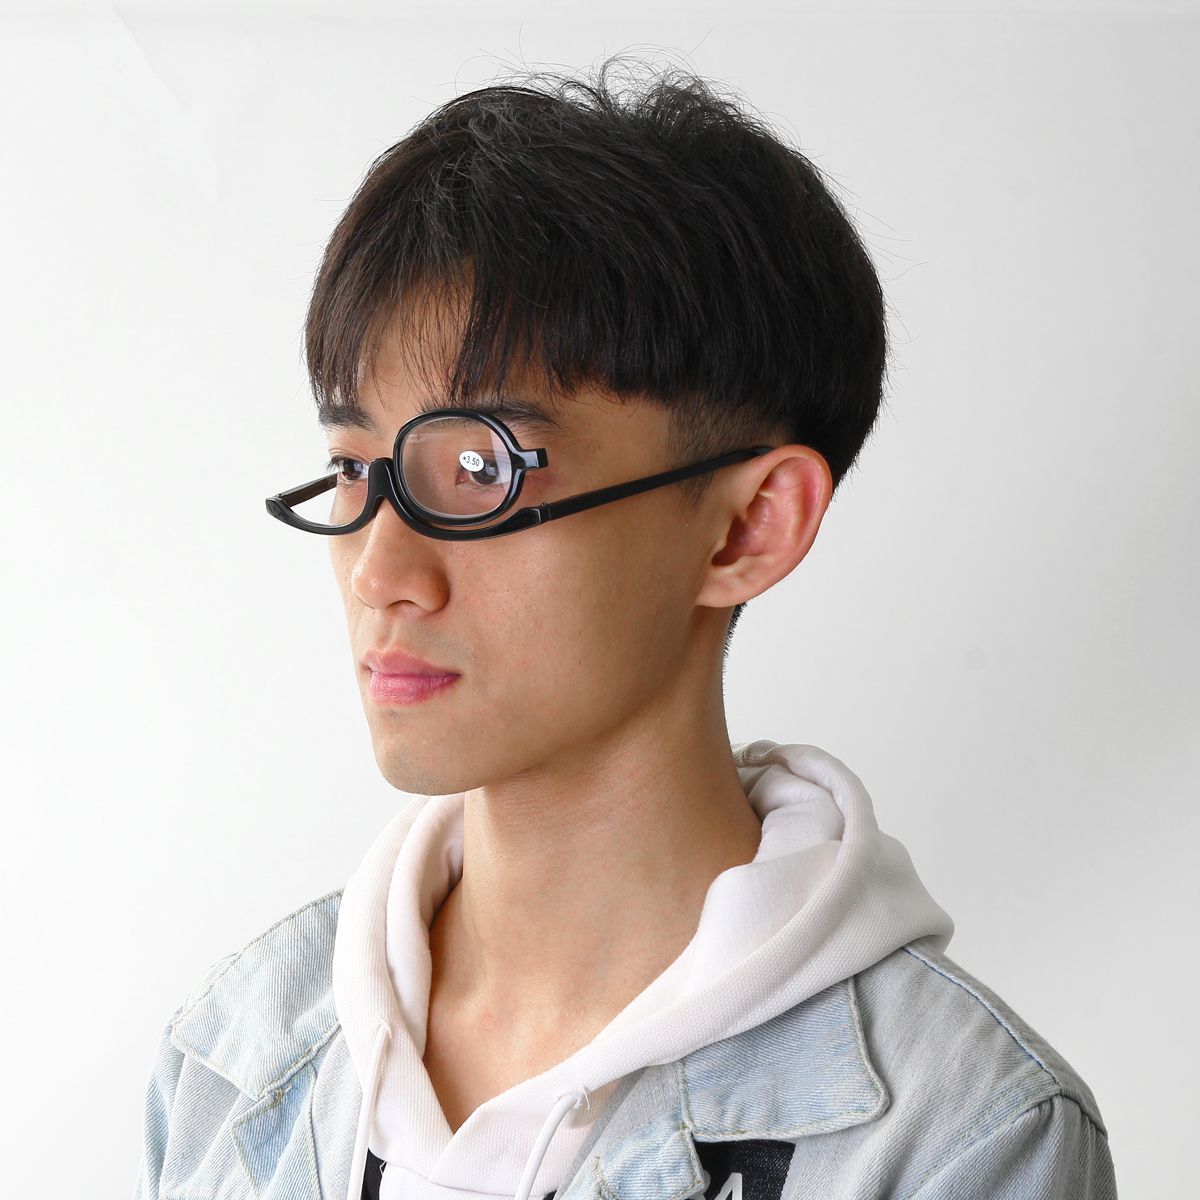 Women-Makeup-Magnifying-Reading-Glasses-Flip-Lens-Make-Up-Eye-Glasses-100--400-1399204